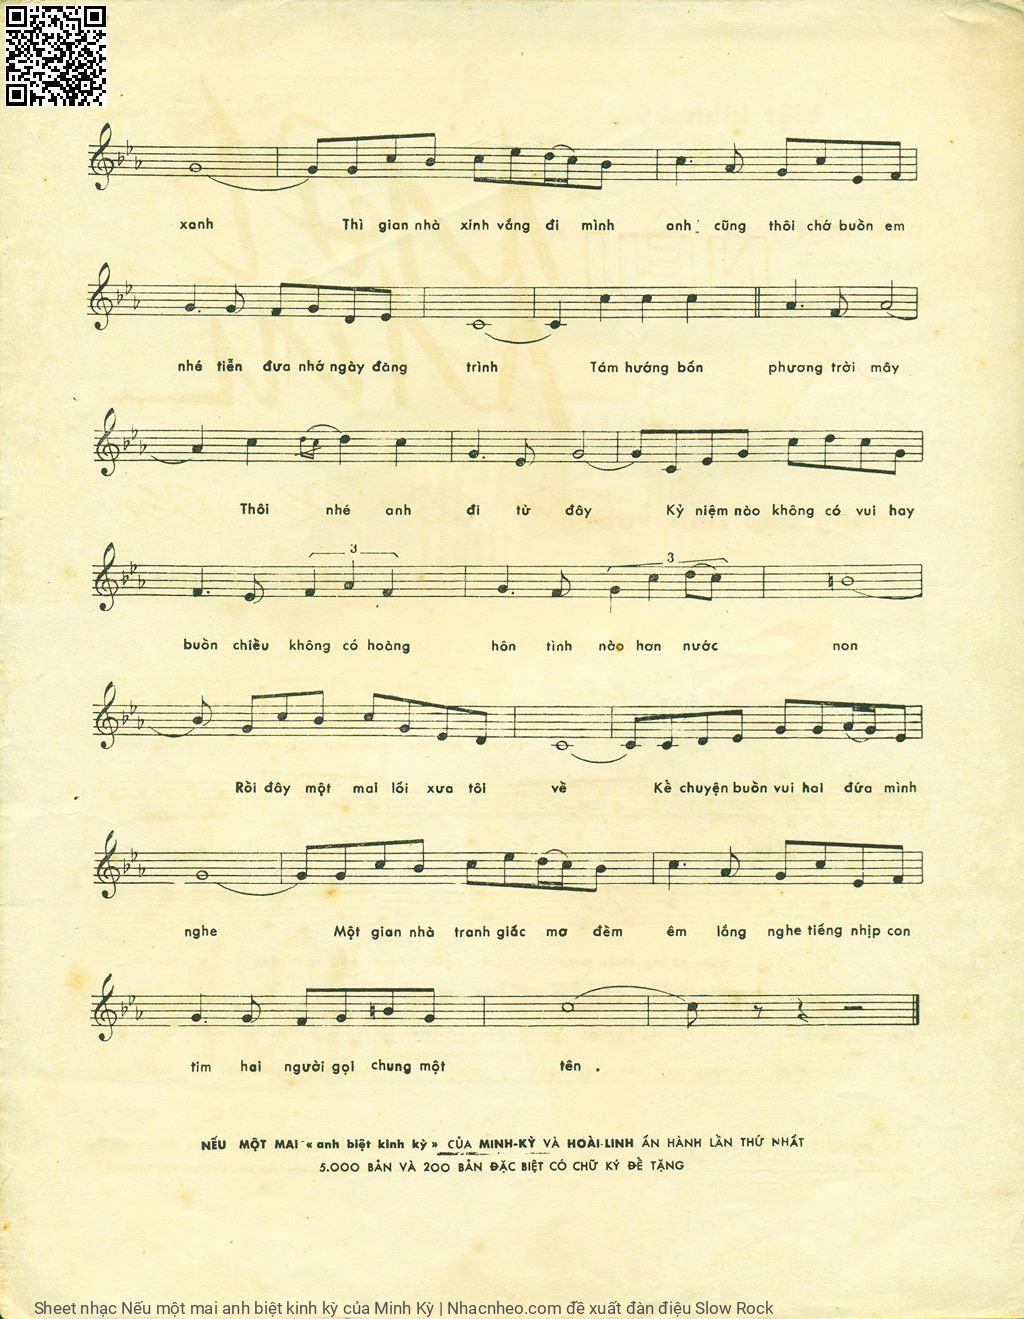 Trang 3 của Sheet nhạc PDF bài hát Nếu một mai anh biệt kinh kỳ - Minh Kỳ